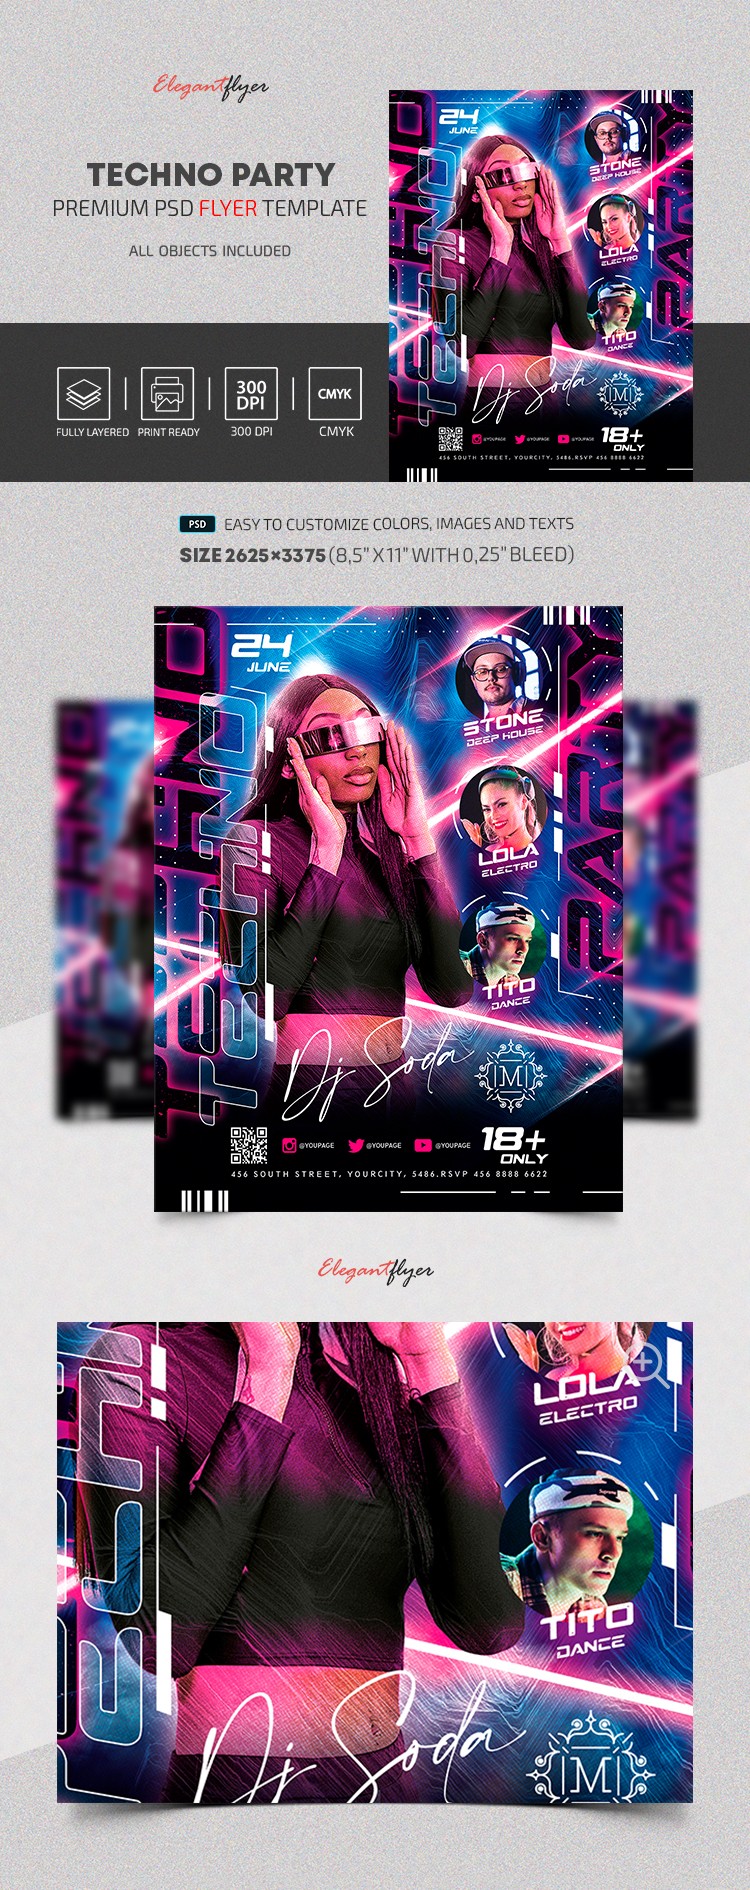 Techno Party Flyer by ElegantFlyer